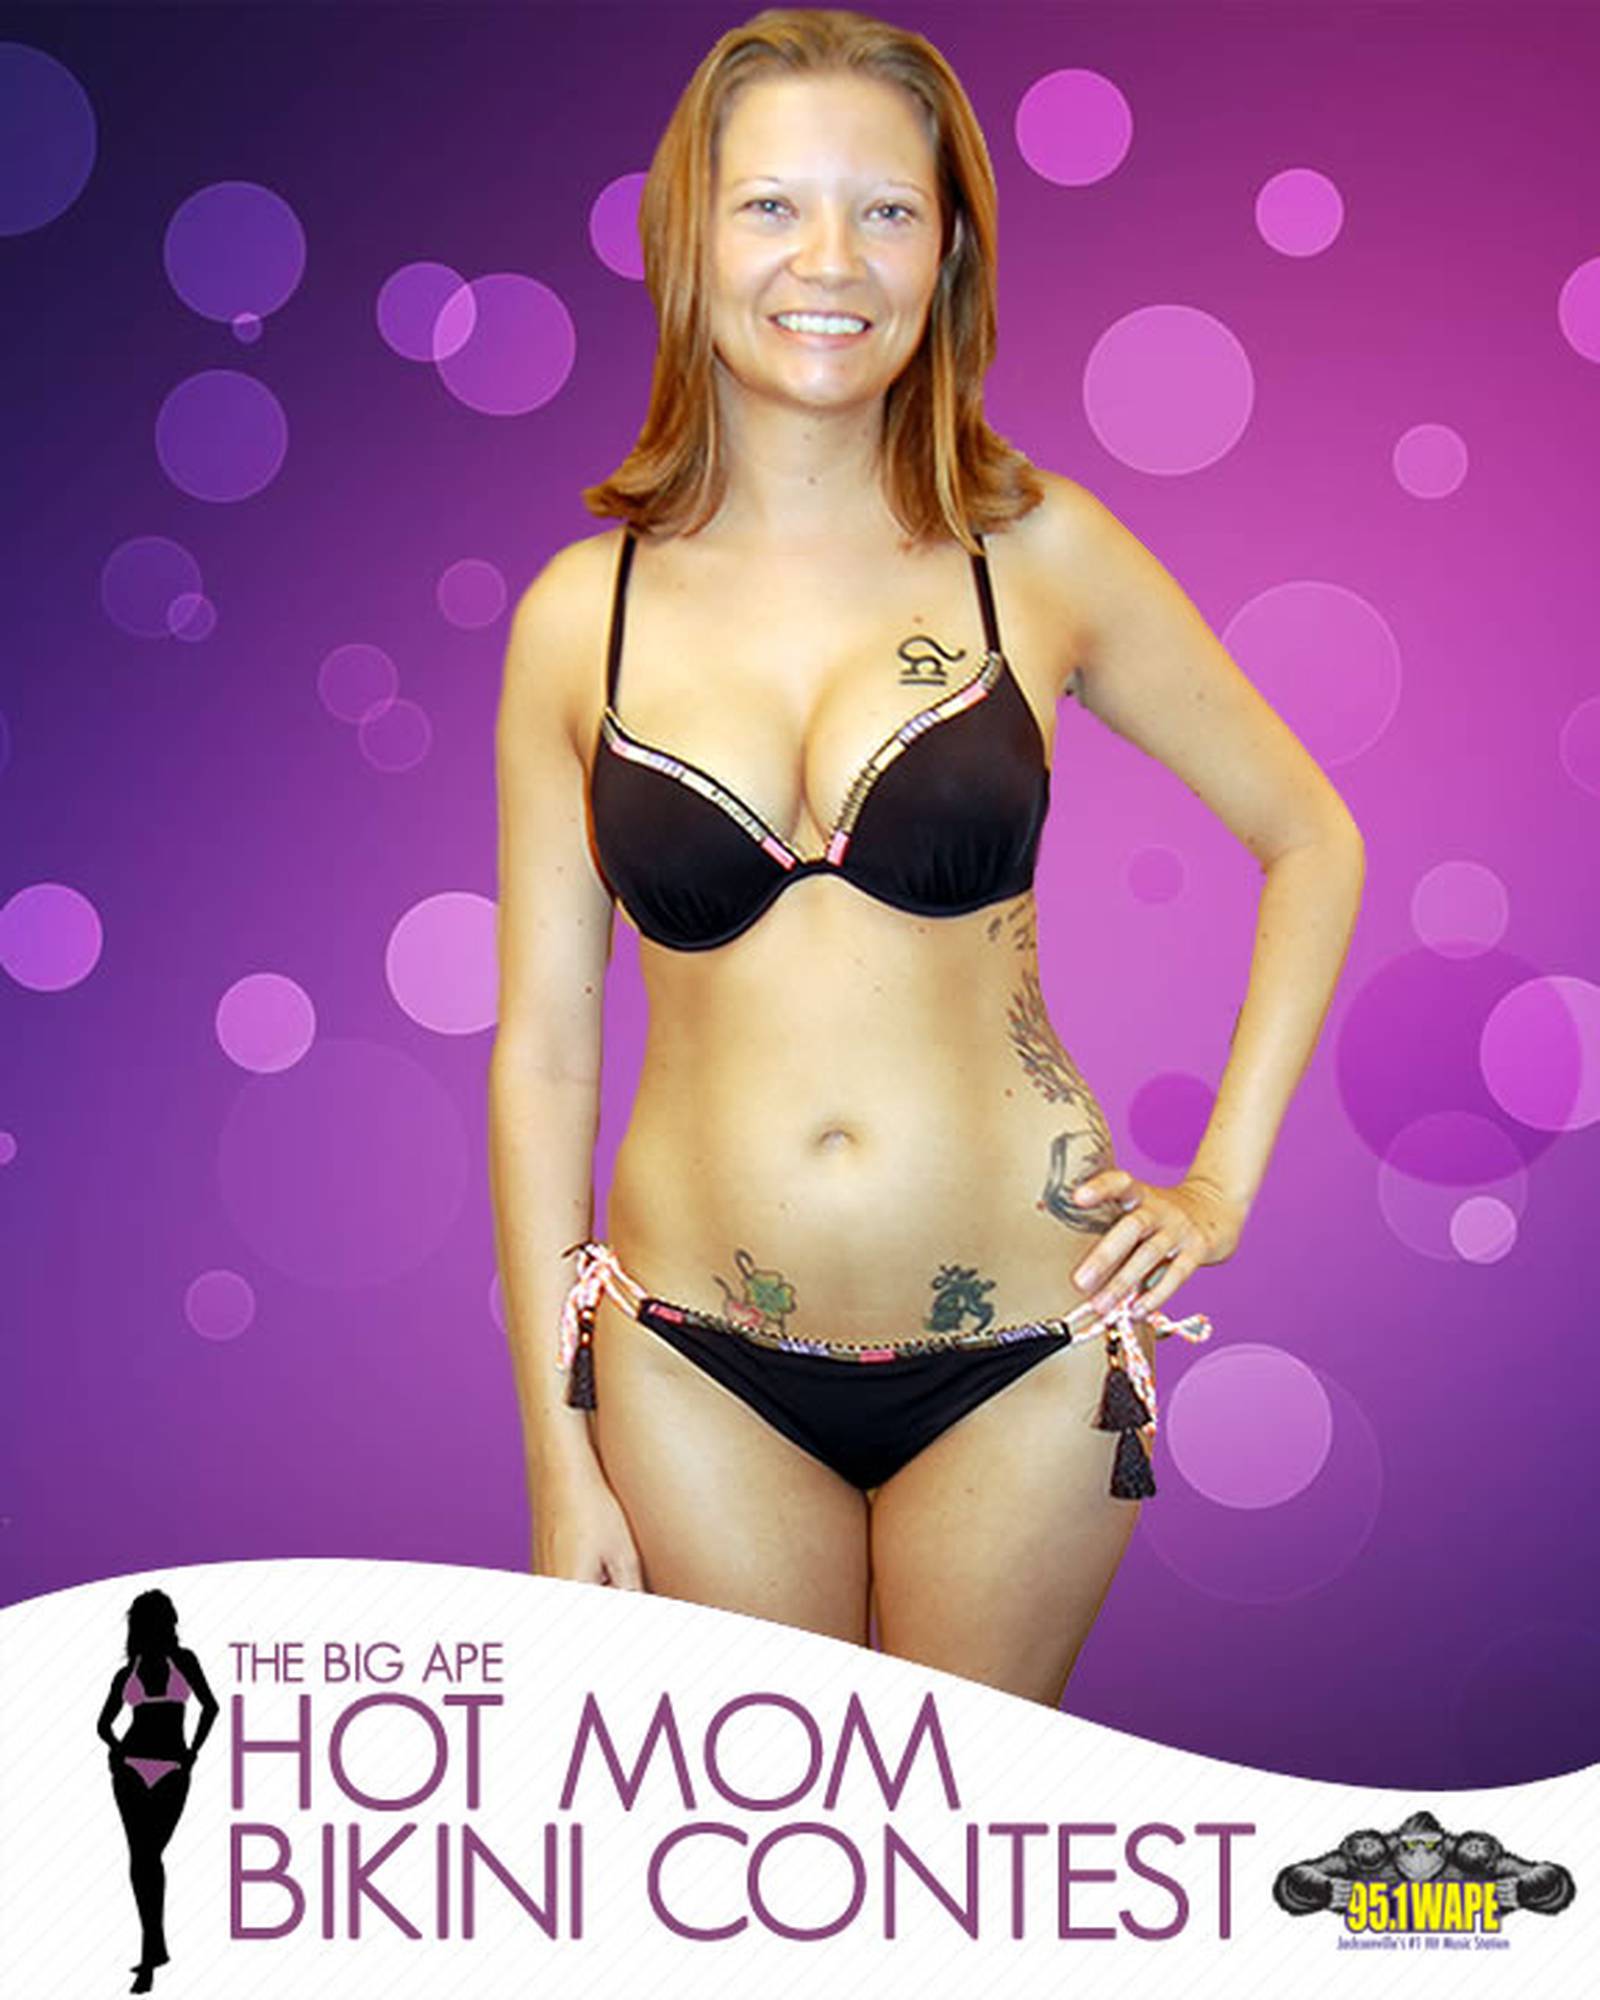 Hot Mom Bikini Contest 2016 95.1 WAPE